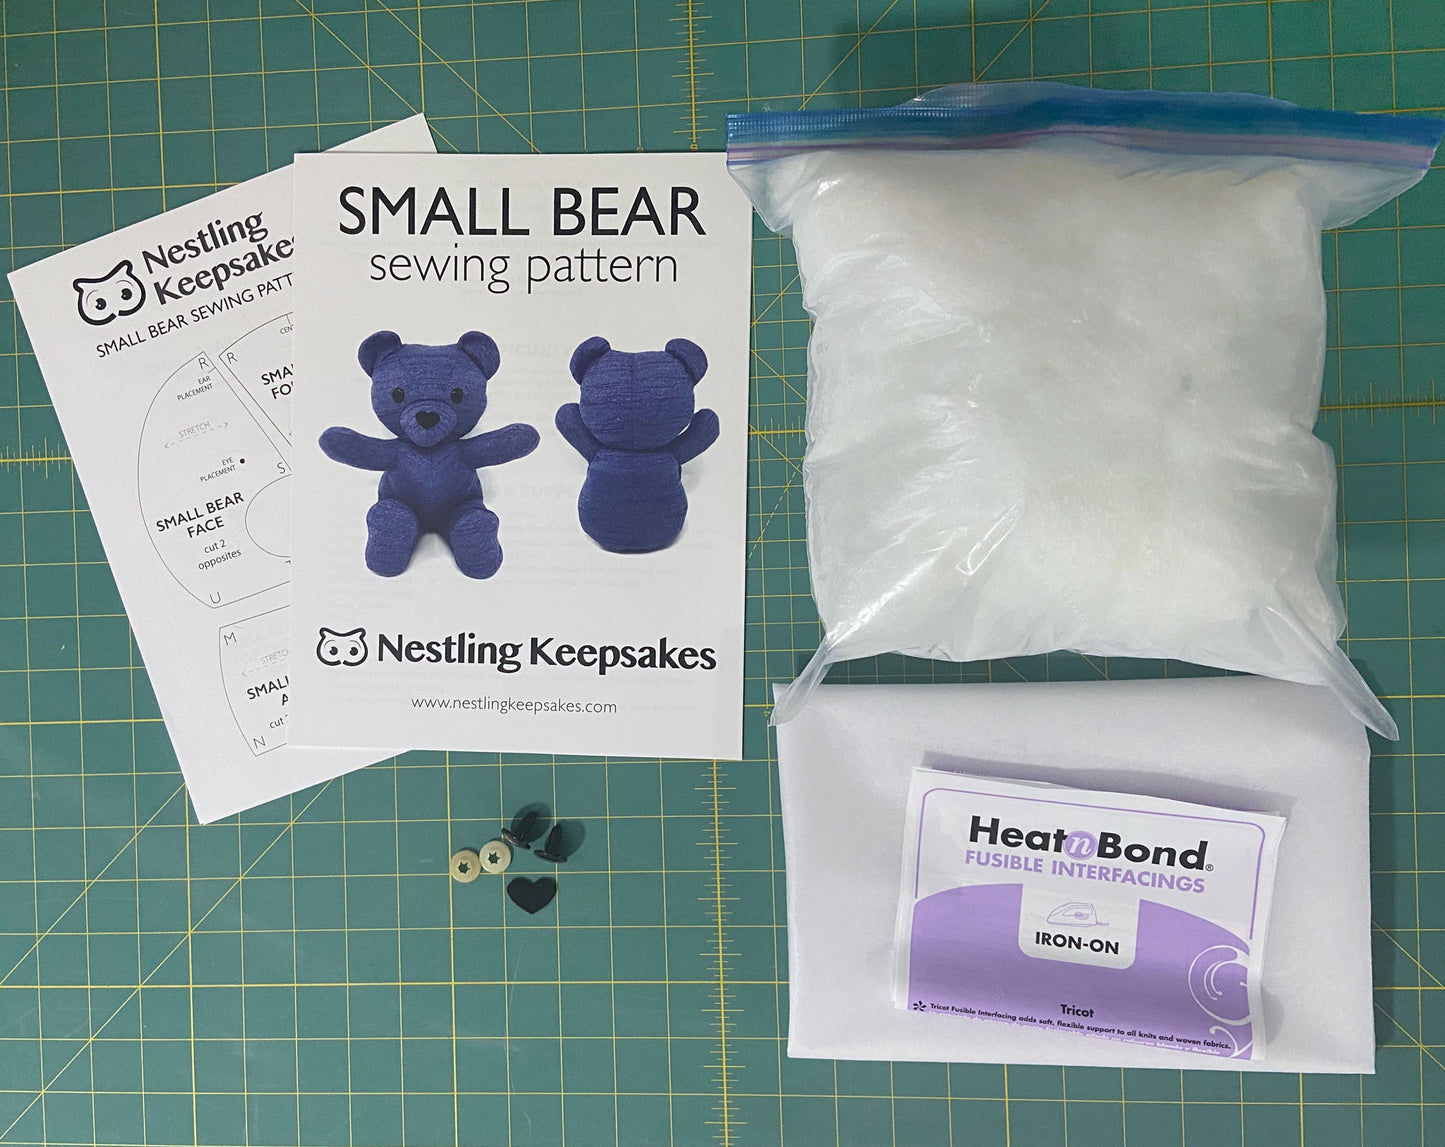 Memory Bear Sewing Kit - SMALL 8.5"